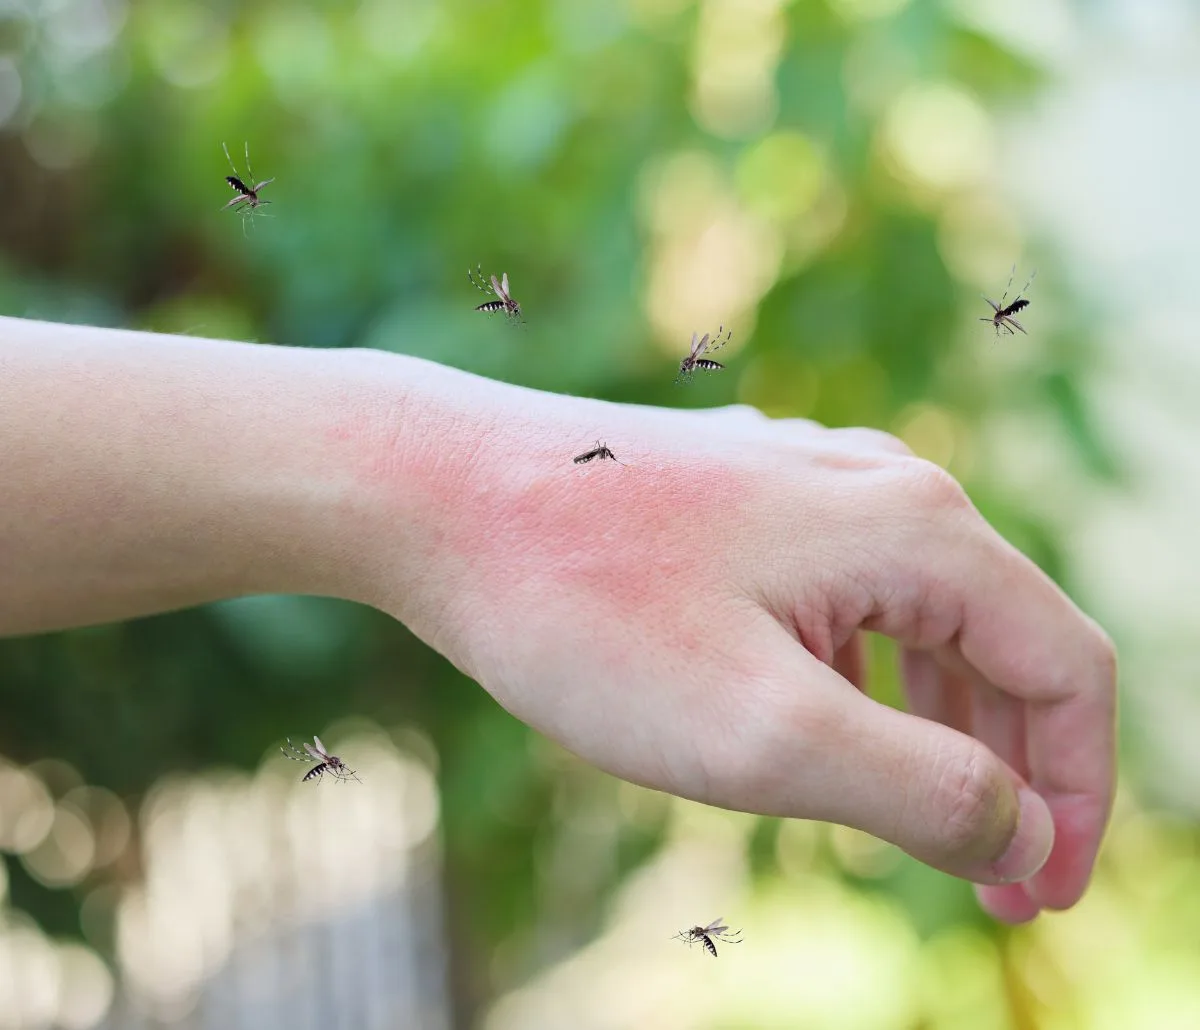 mosquito bites on hand